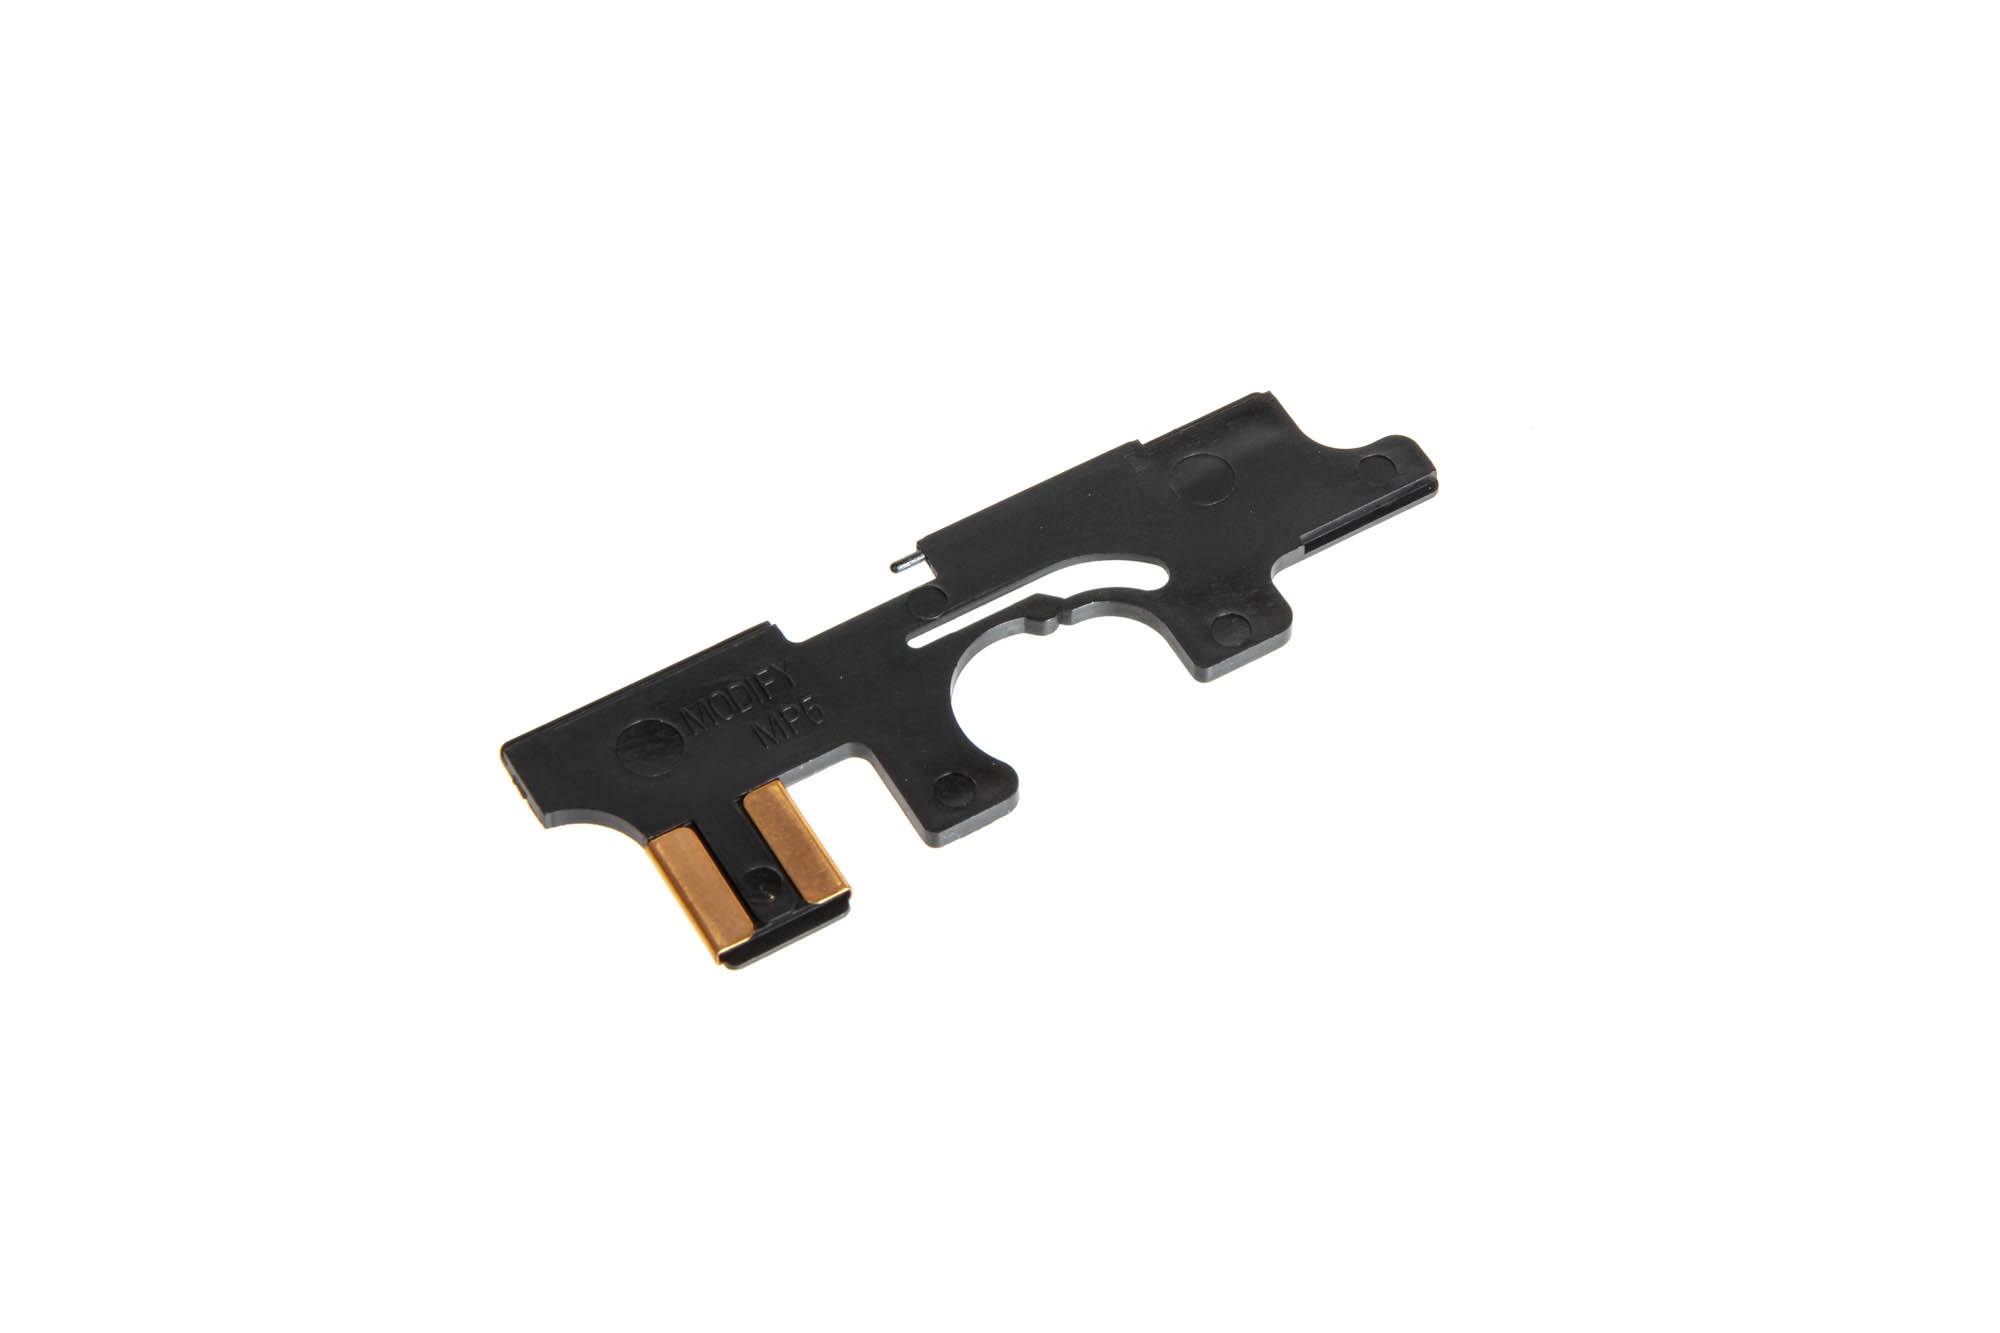 Auswahlplatte für MP5 Airsoftgewehre